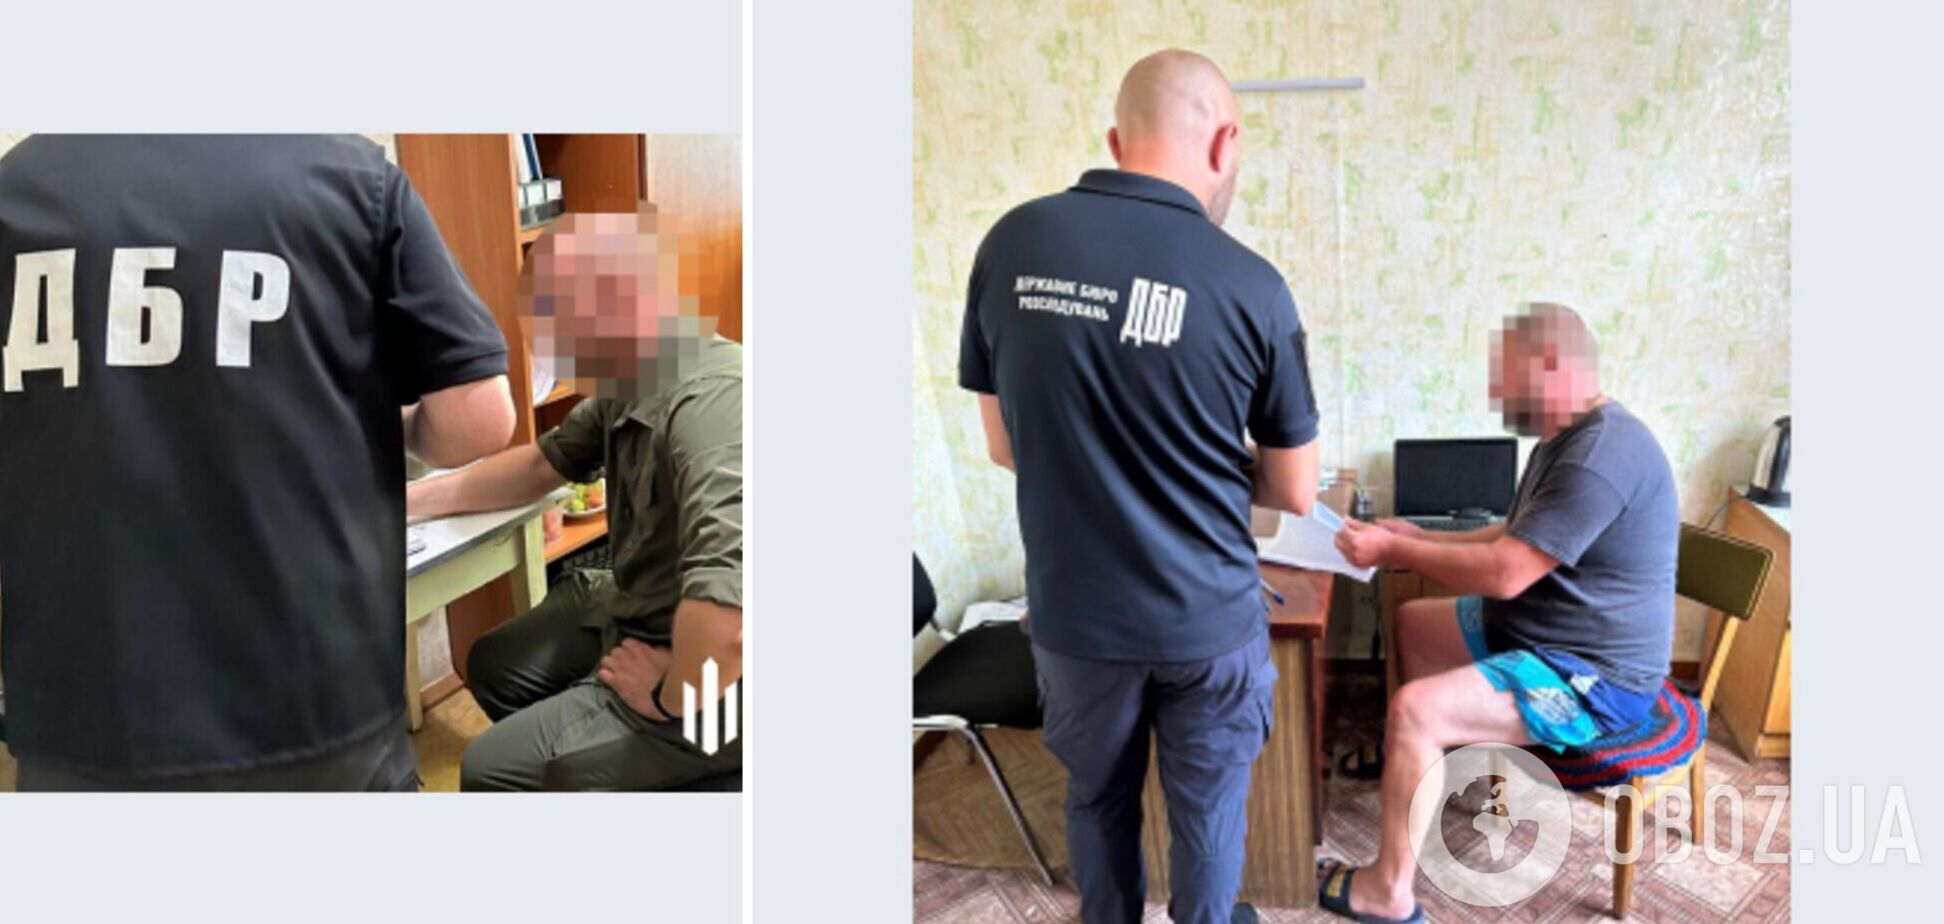 В Полтавской области задержали военкома: жестоко избил своего подчиненного. Фото и видео